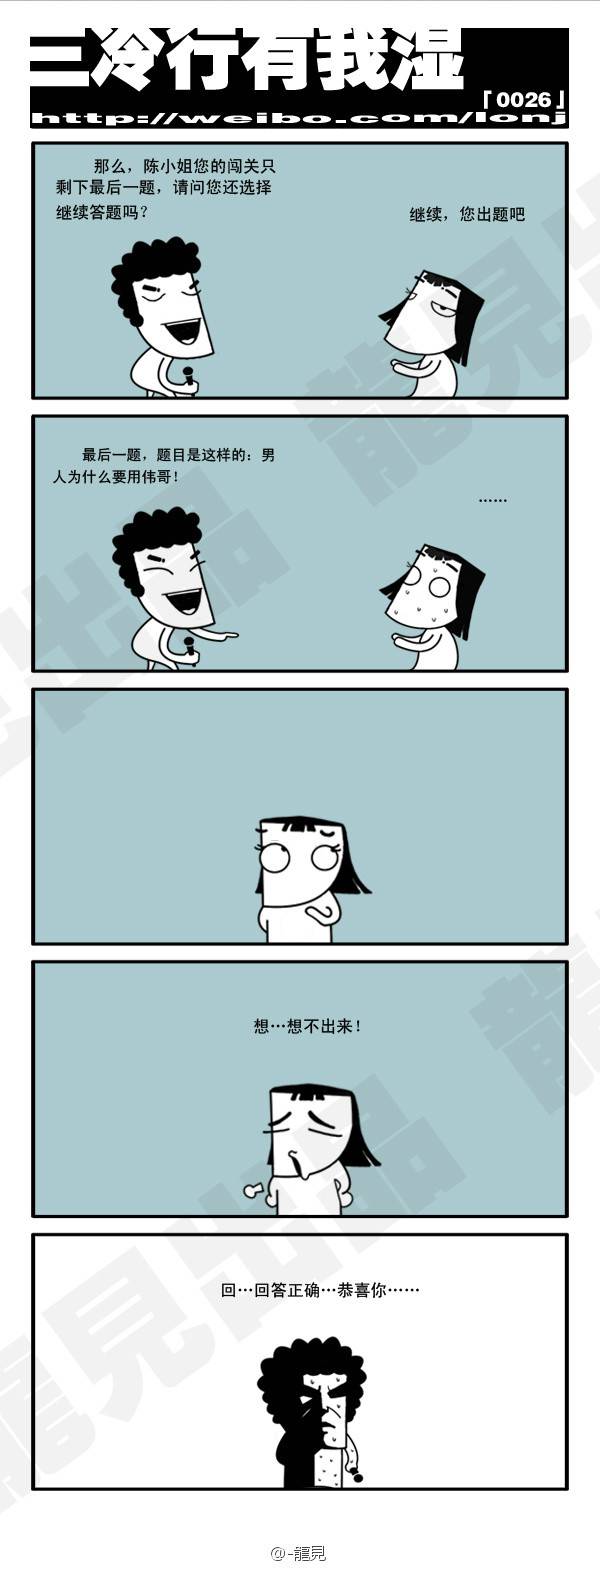 邪恶漫画爆笑囧图第286刊：时代变迁的舞蹈